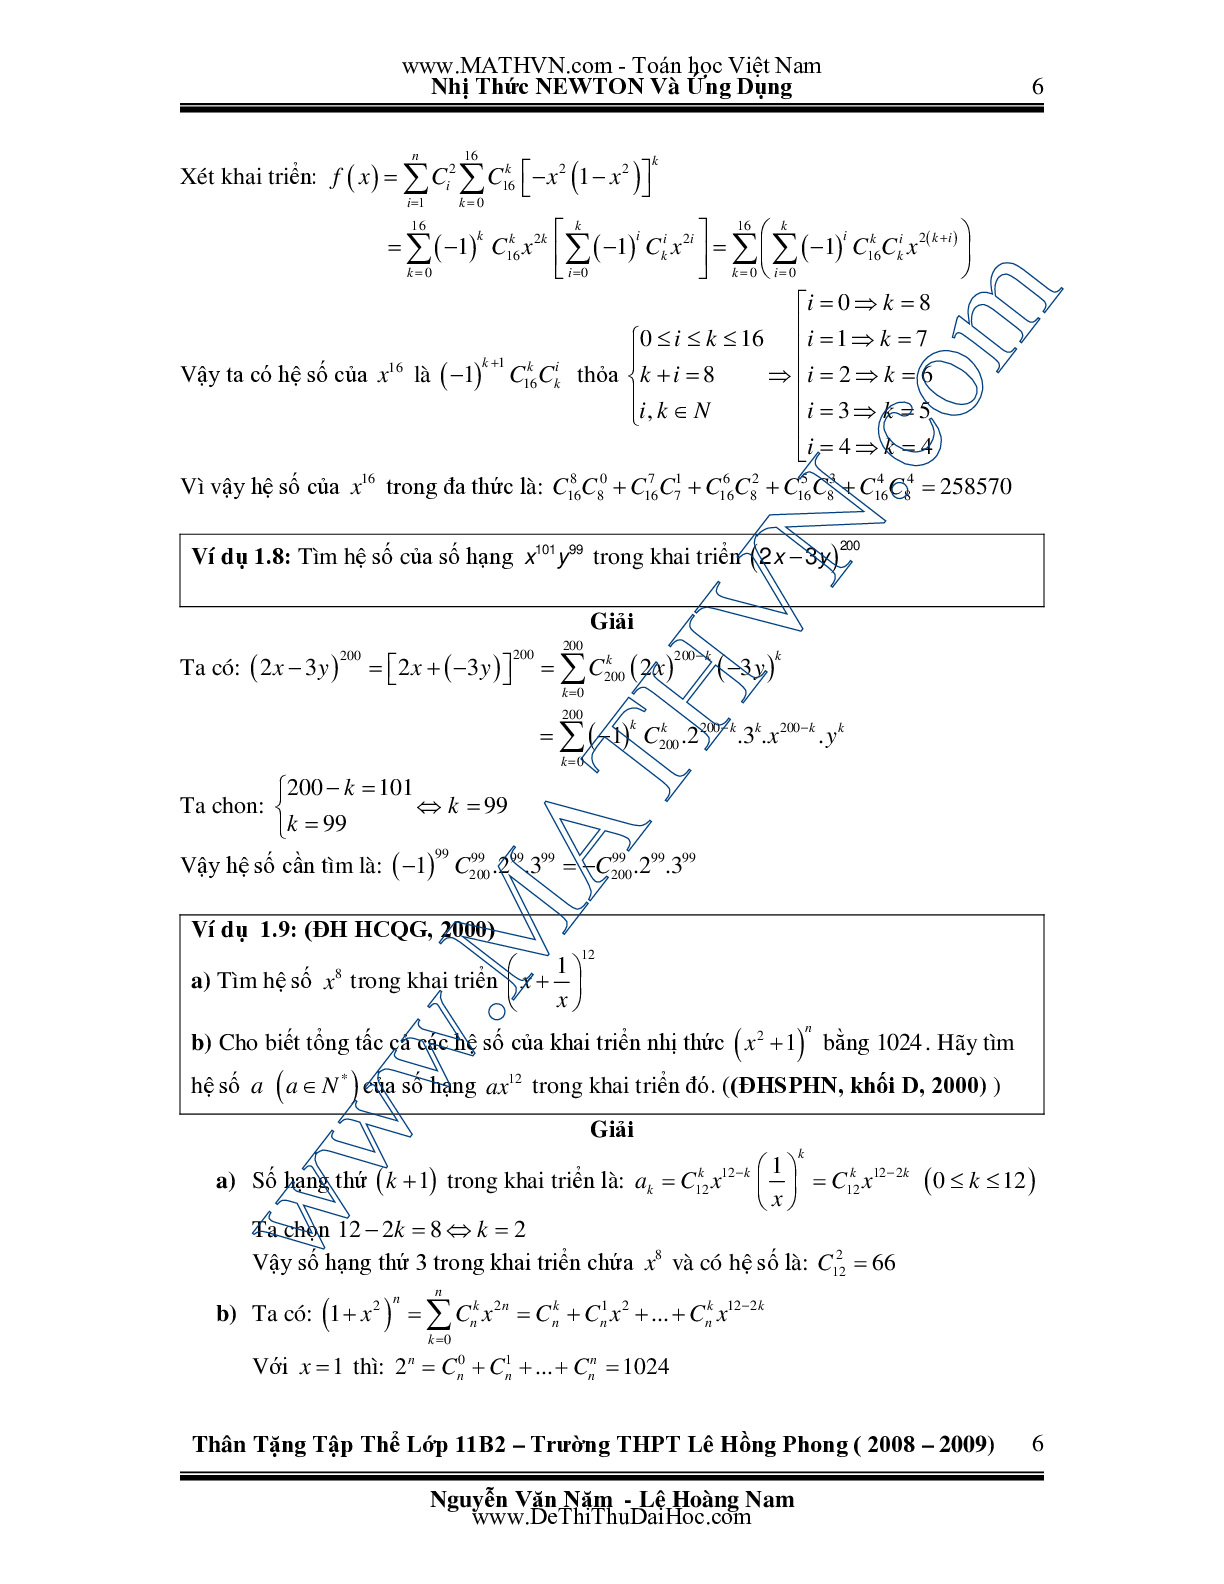 Chuyên đề Nhị thức Newton và ứng dụng môn Toán lớp 11 (trang 6)